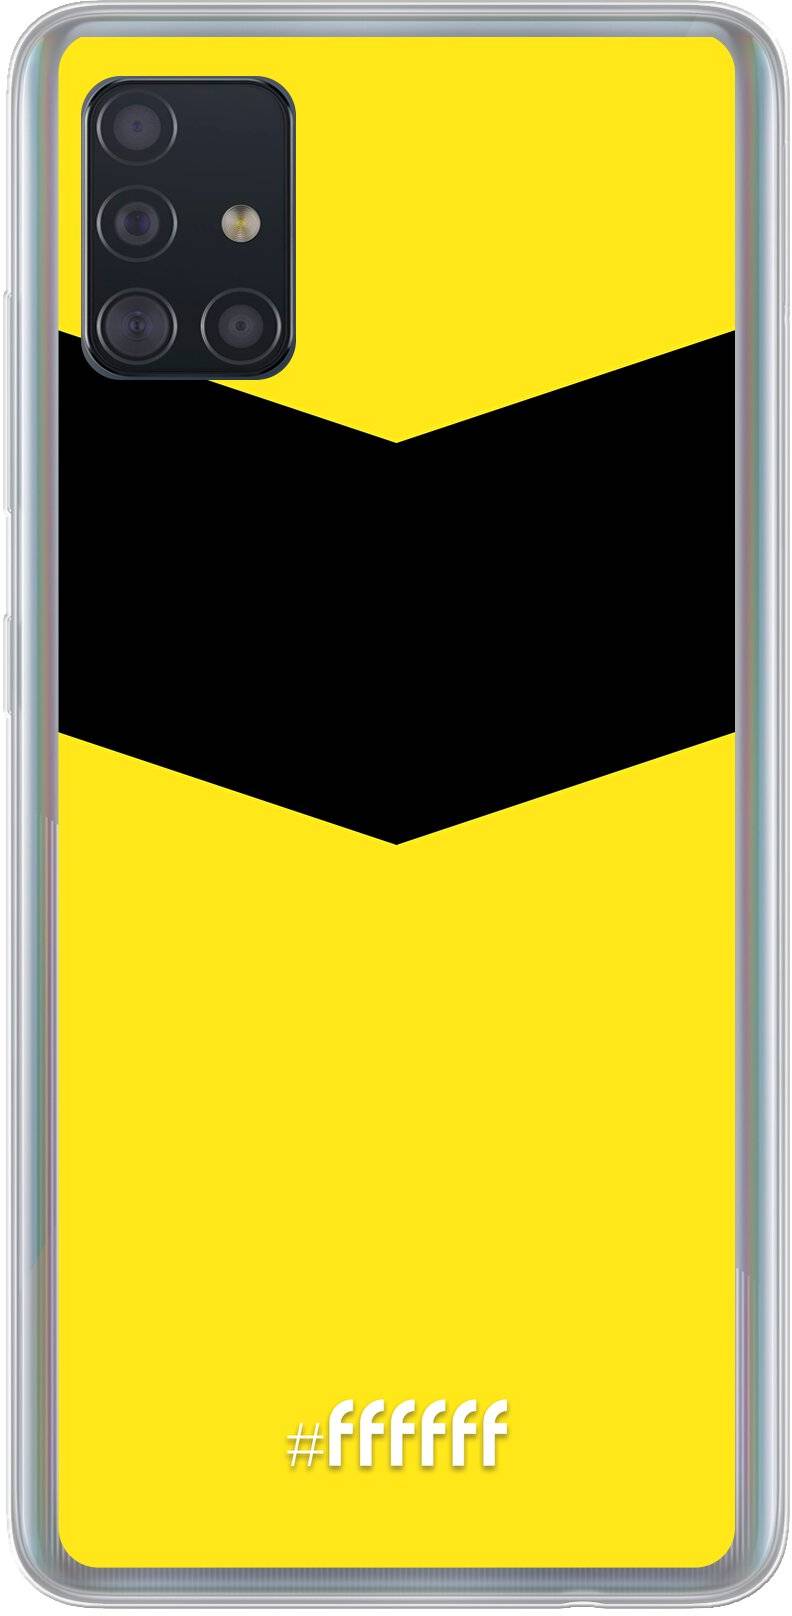 VVV-Venlo Galaxy A51